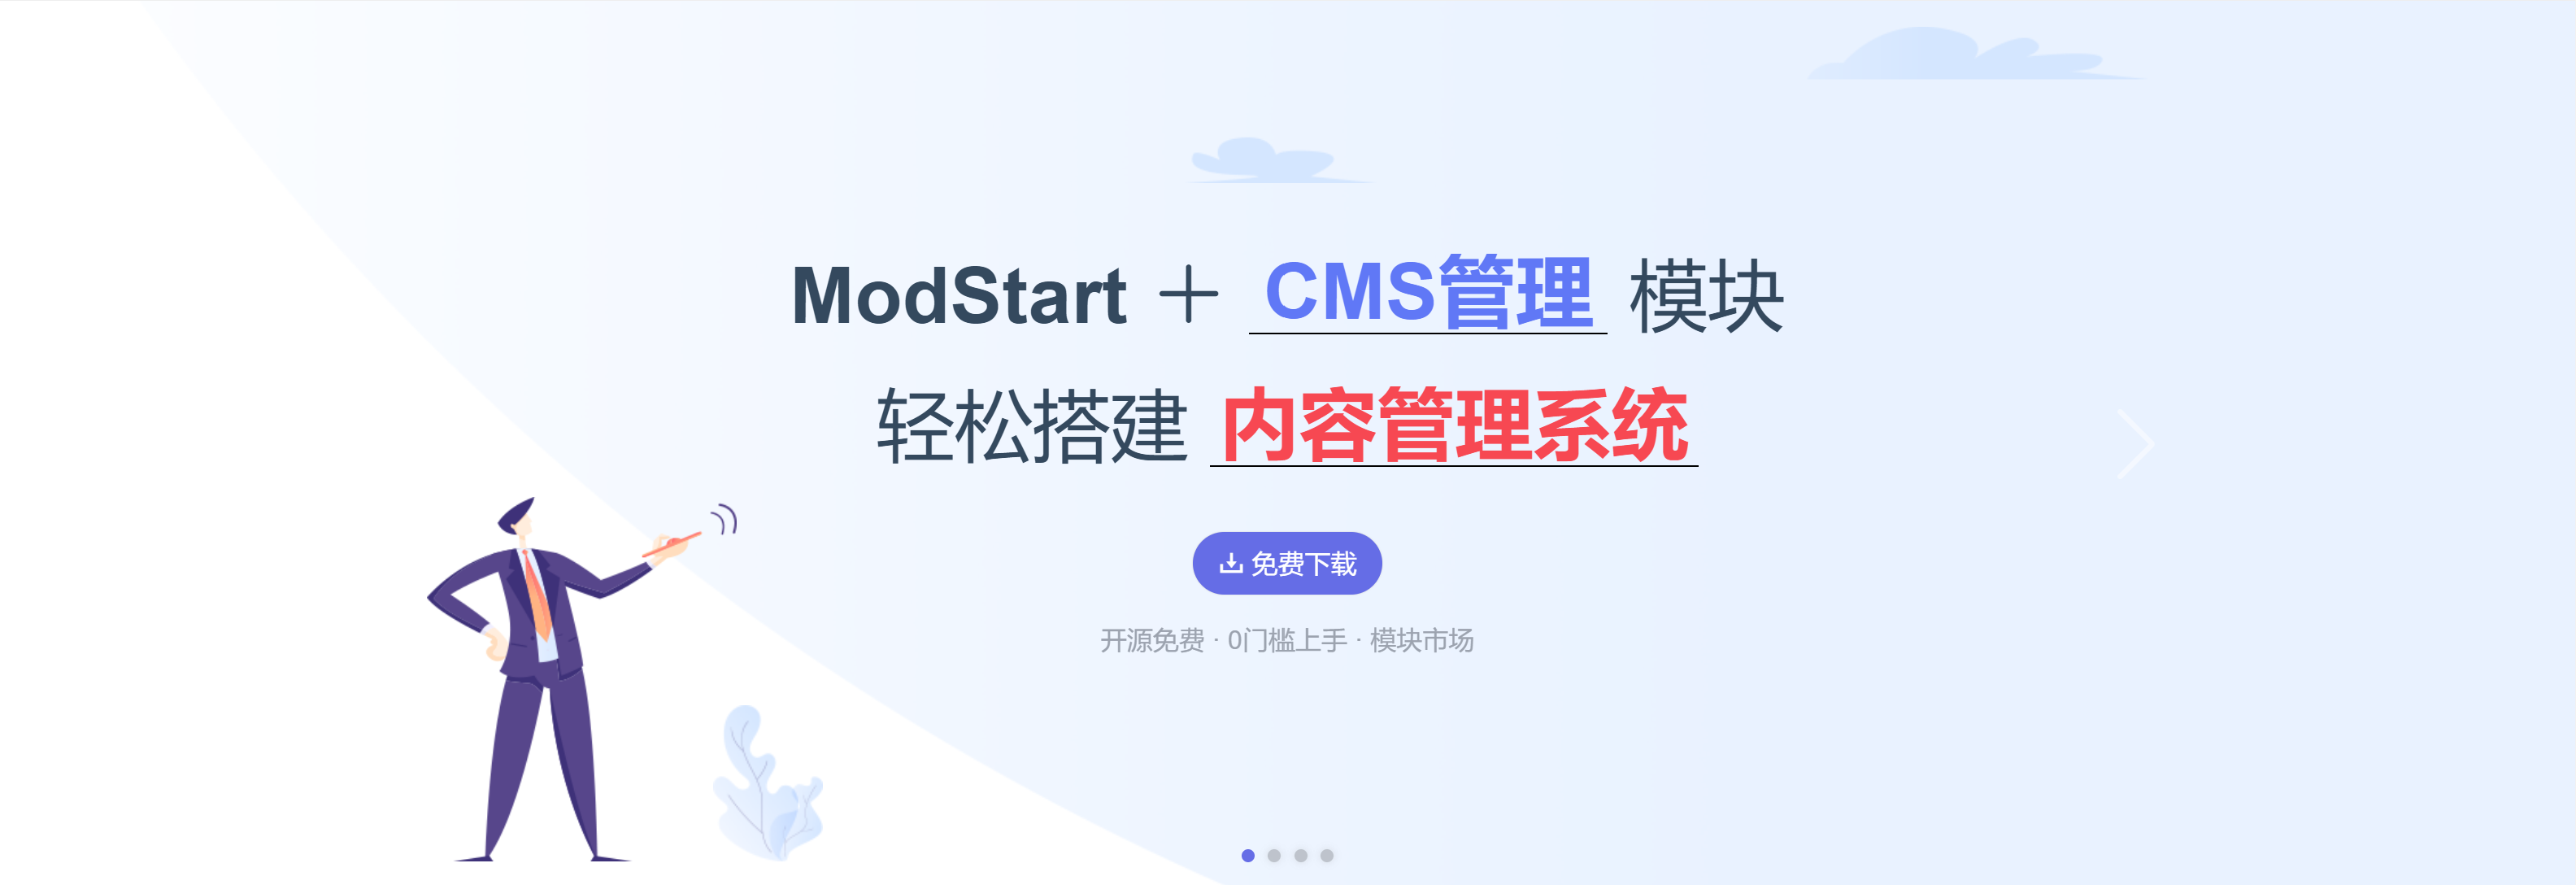 现代化个人博客系统ModStartBlog